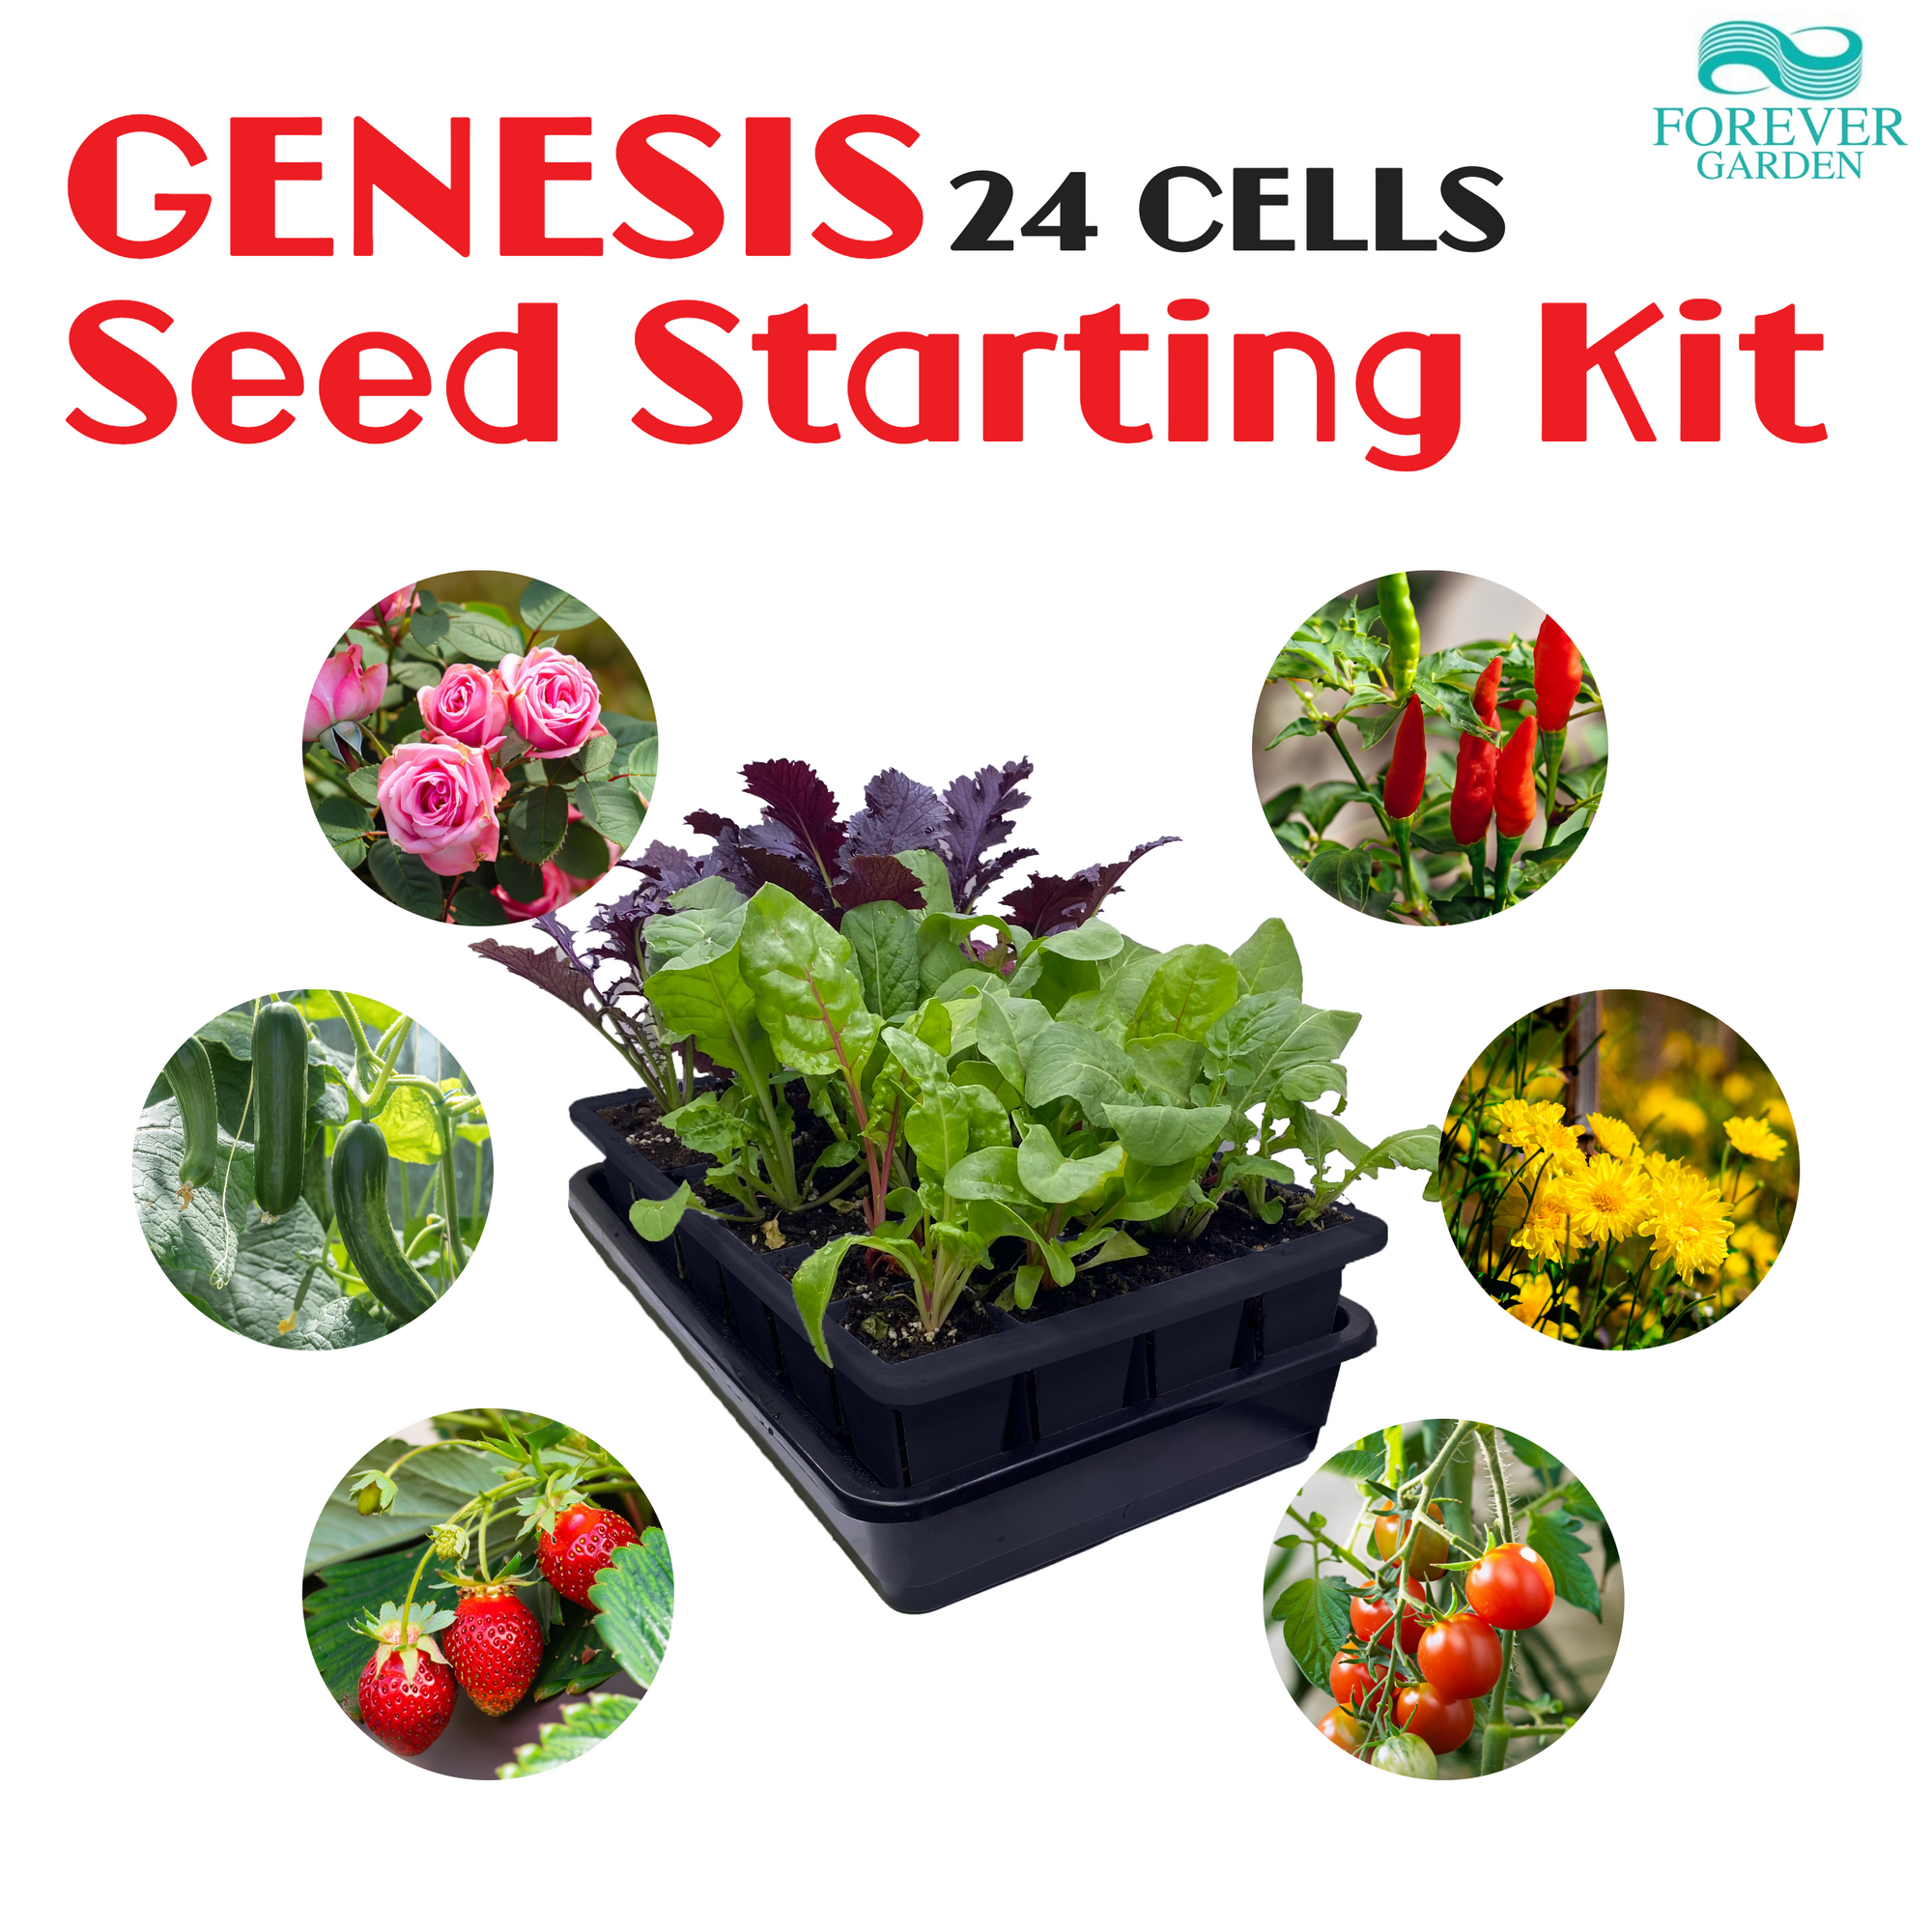 Genesis Seed Starting Kit